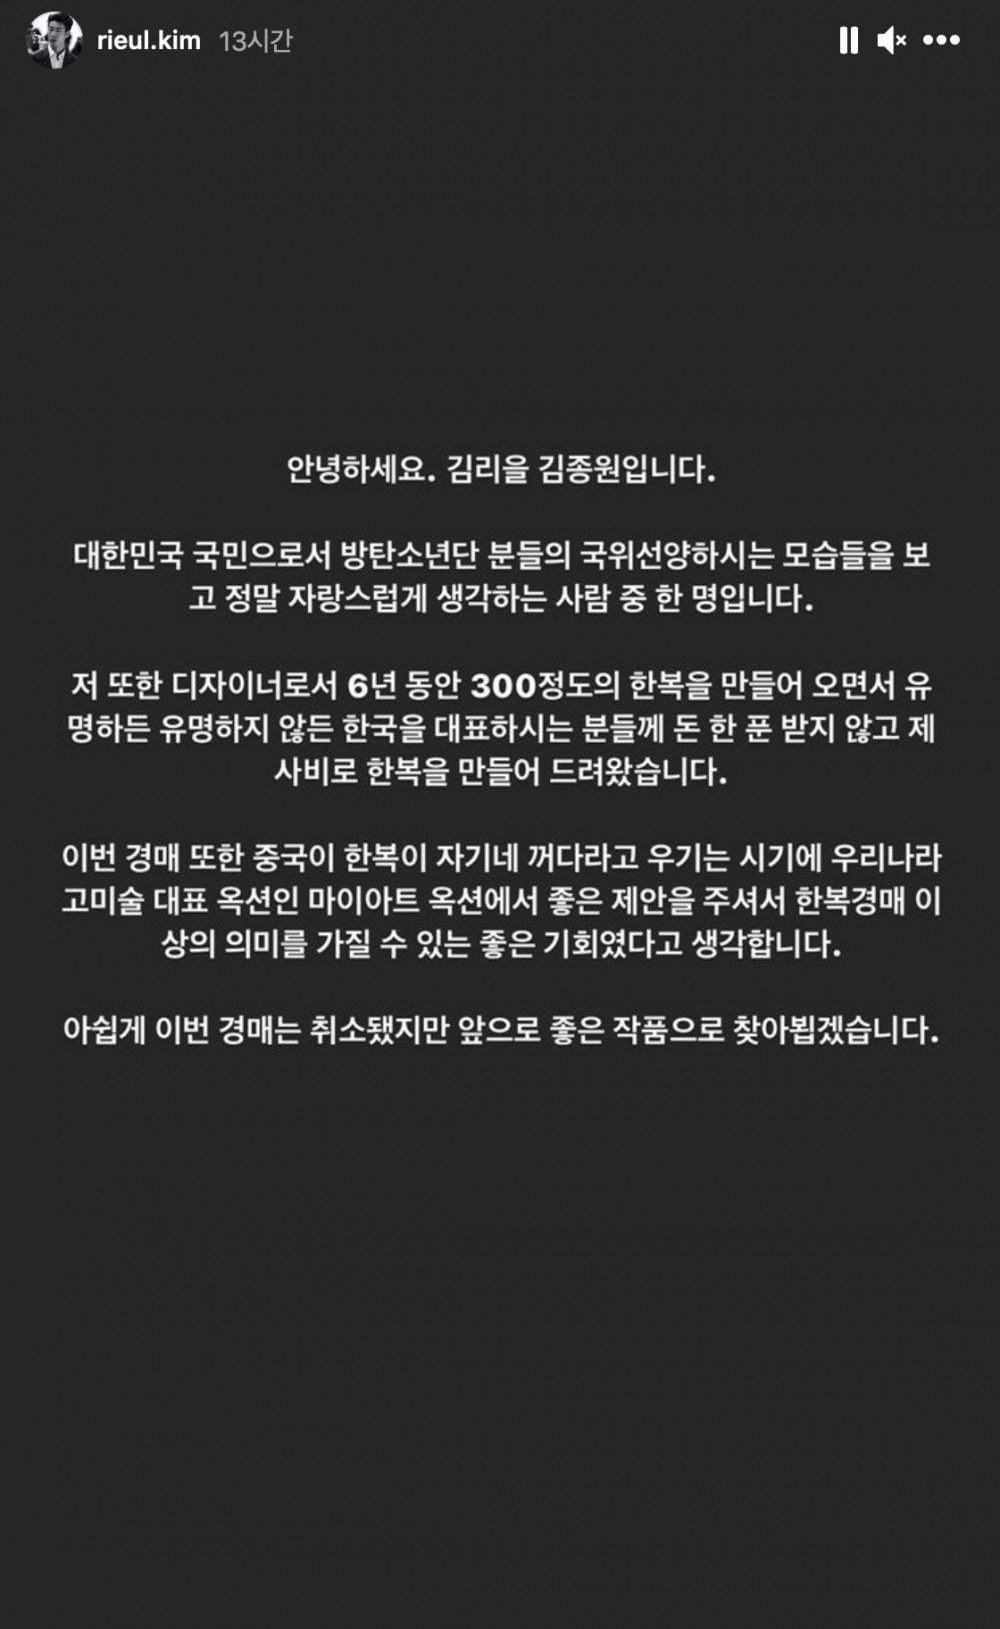 Дизайнер Ким Риыль опубликовал заявление об отмене аукциона ханбока, который носил Чимин из BTS